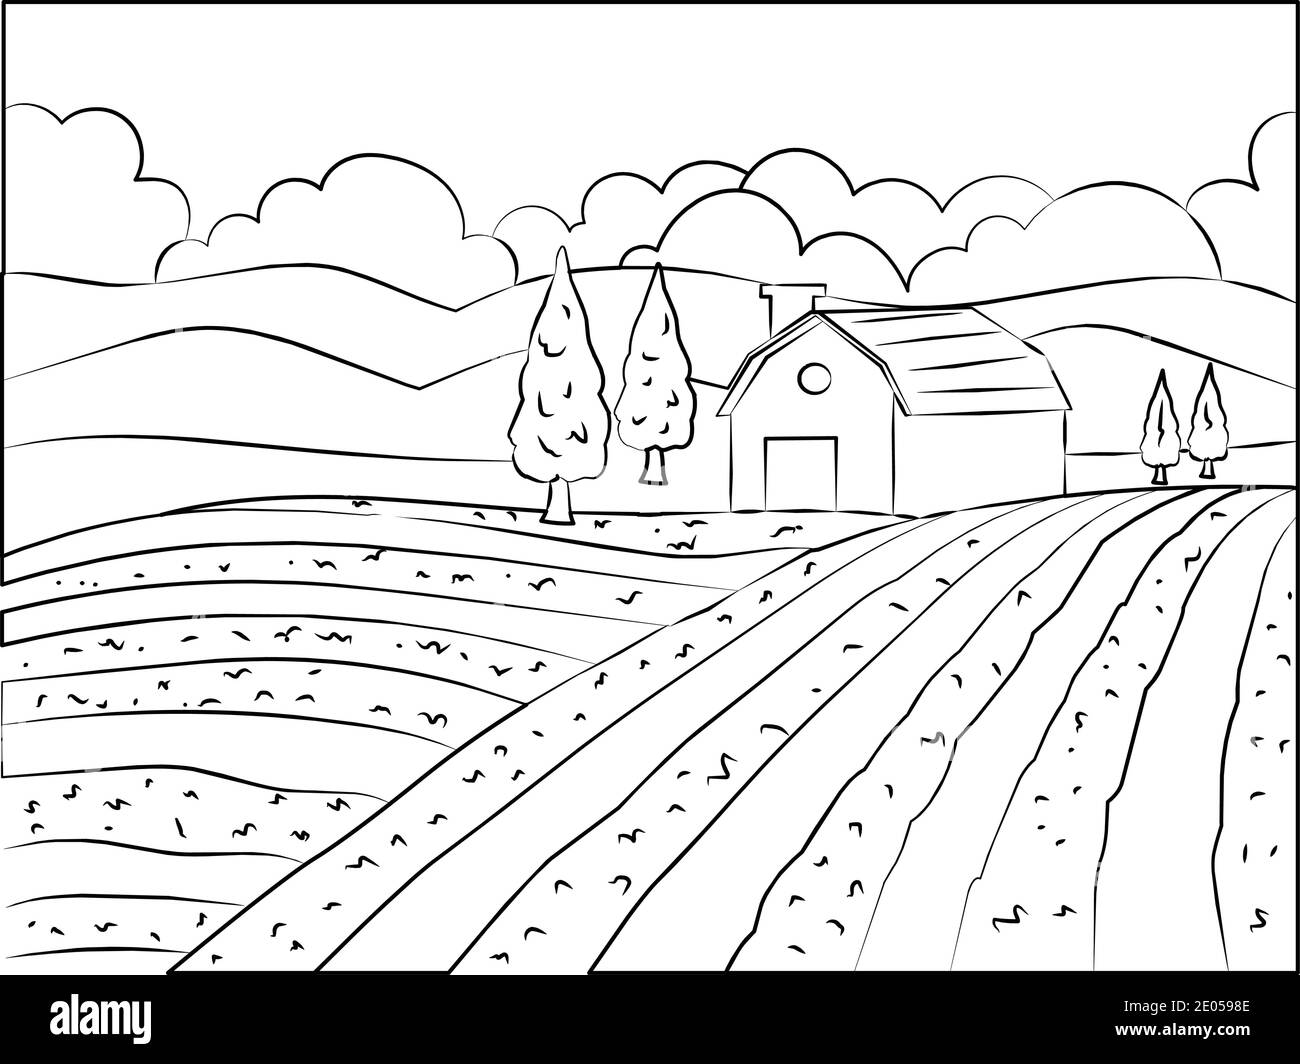 Dibujo a mano ilustración de paisaje natural. Granja agrícola y campo.  Imagen de contorno monocromo vectorial Imagen Vector de stock - Alamy